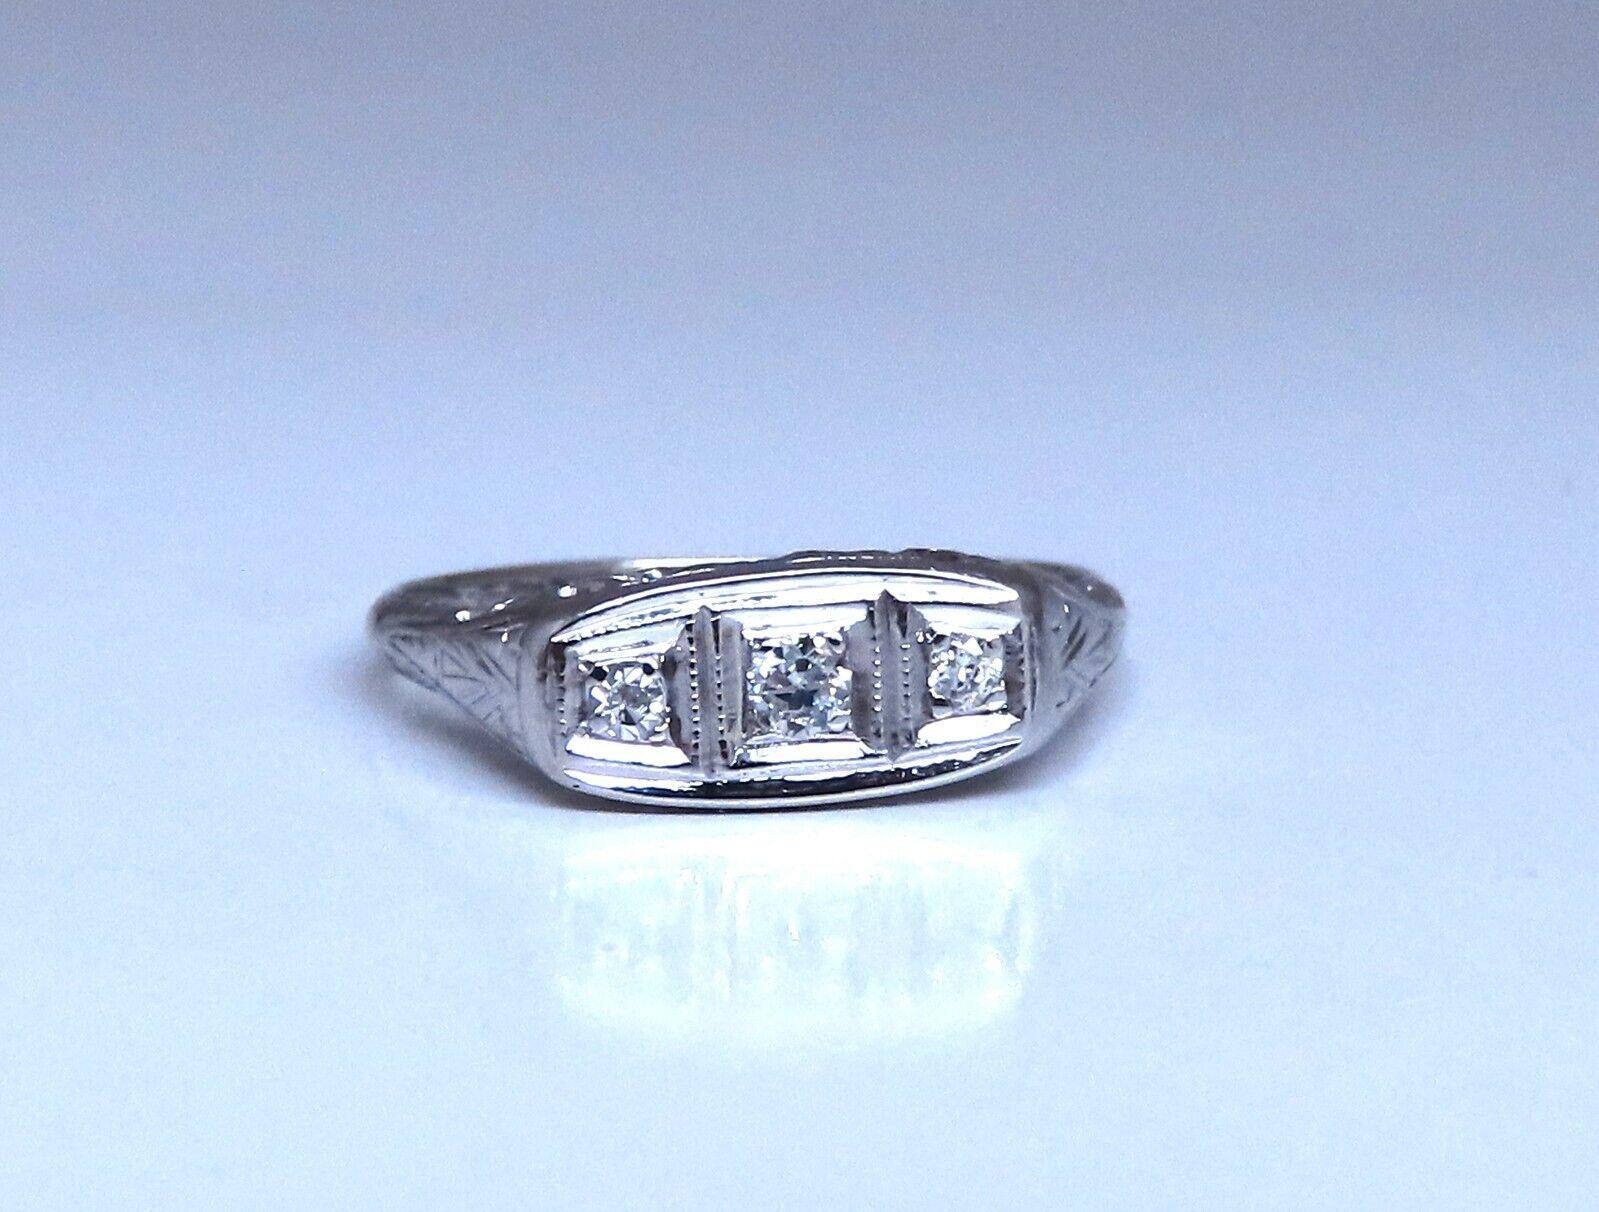 .14ct Natürliche Rundschliff Diamanten Ring

vs-2 Klarheit H Farbe.

14kt Weißgold

2,1 Gramm

Tiefe: 3,5 mm

Breite: 6 mm

Aktuelle Ringgröße: 8

Kann die Größe professionell ändern, bitte anfragen.